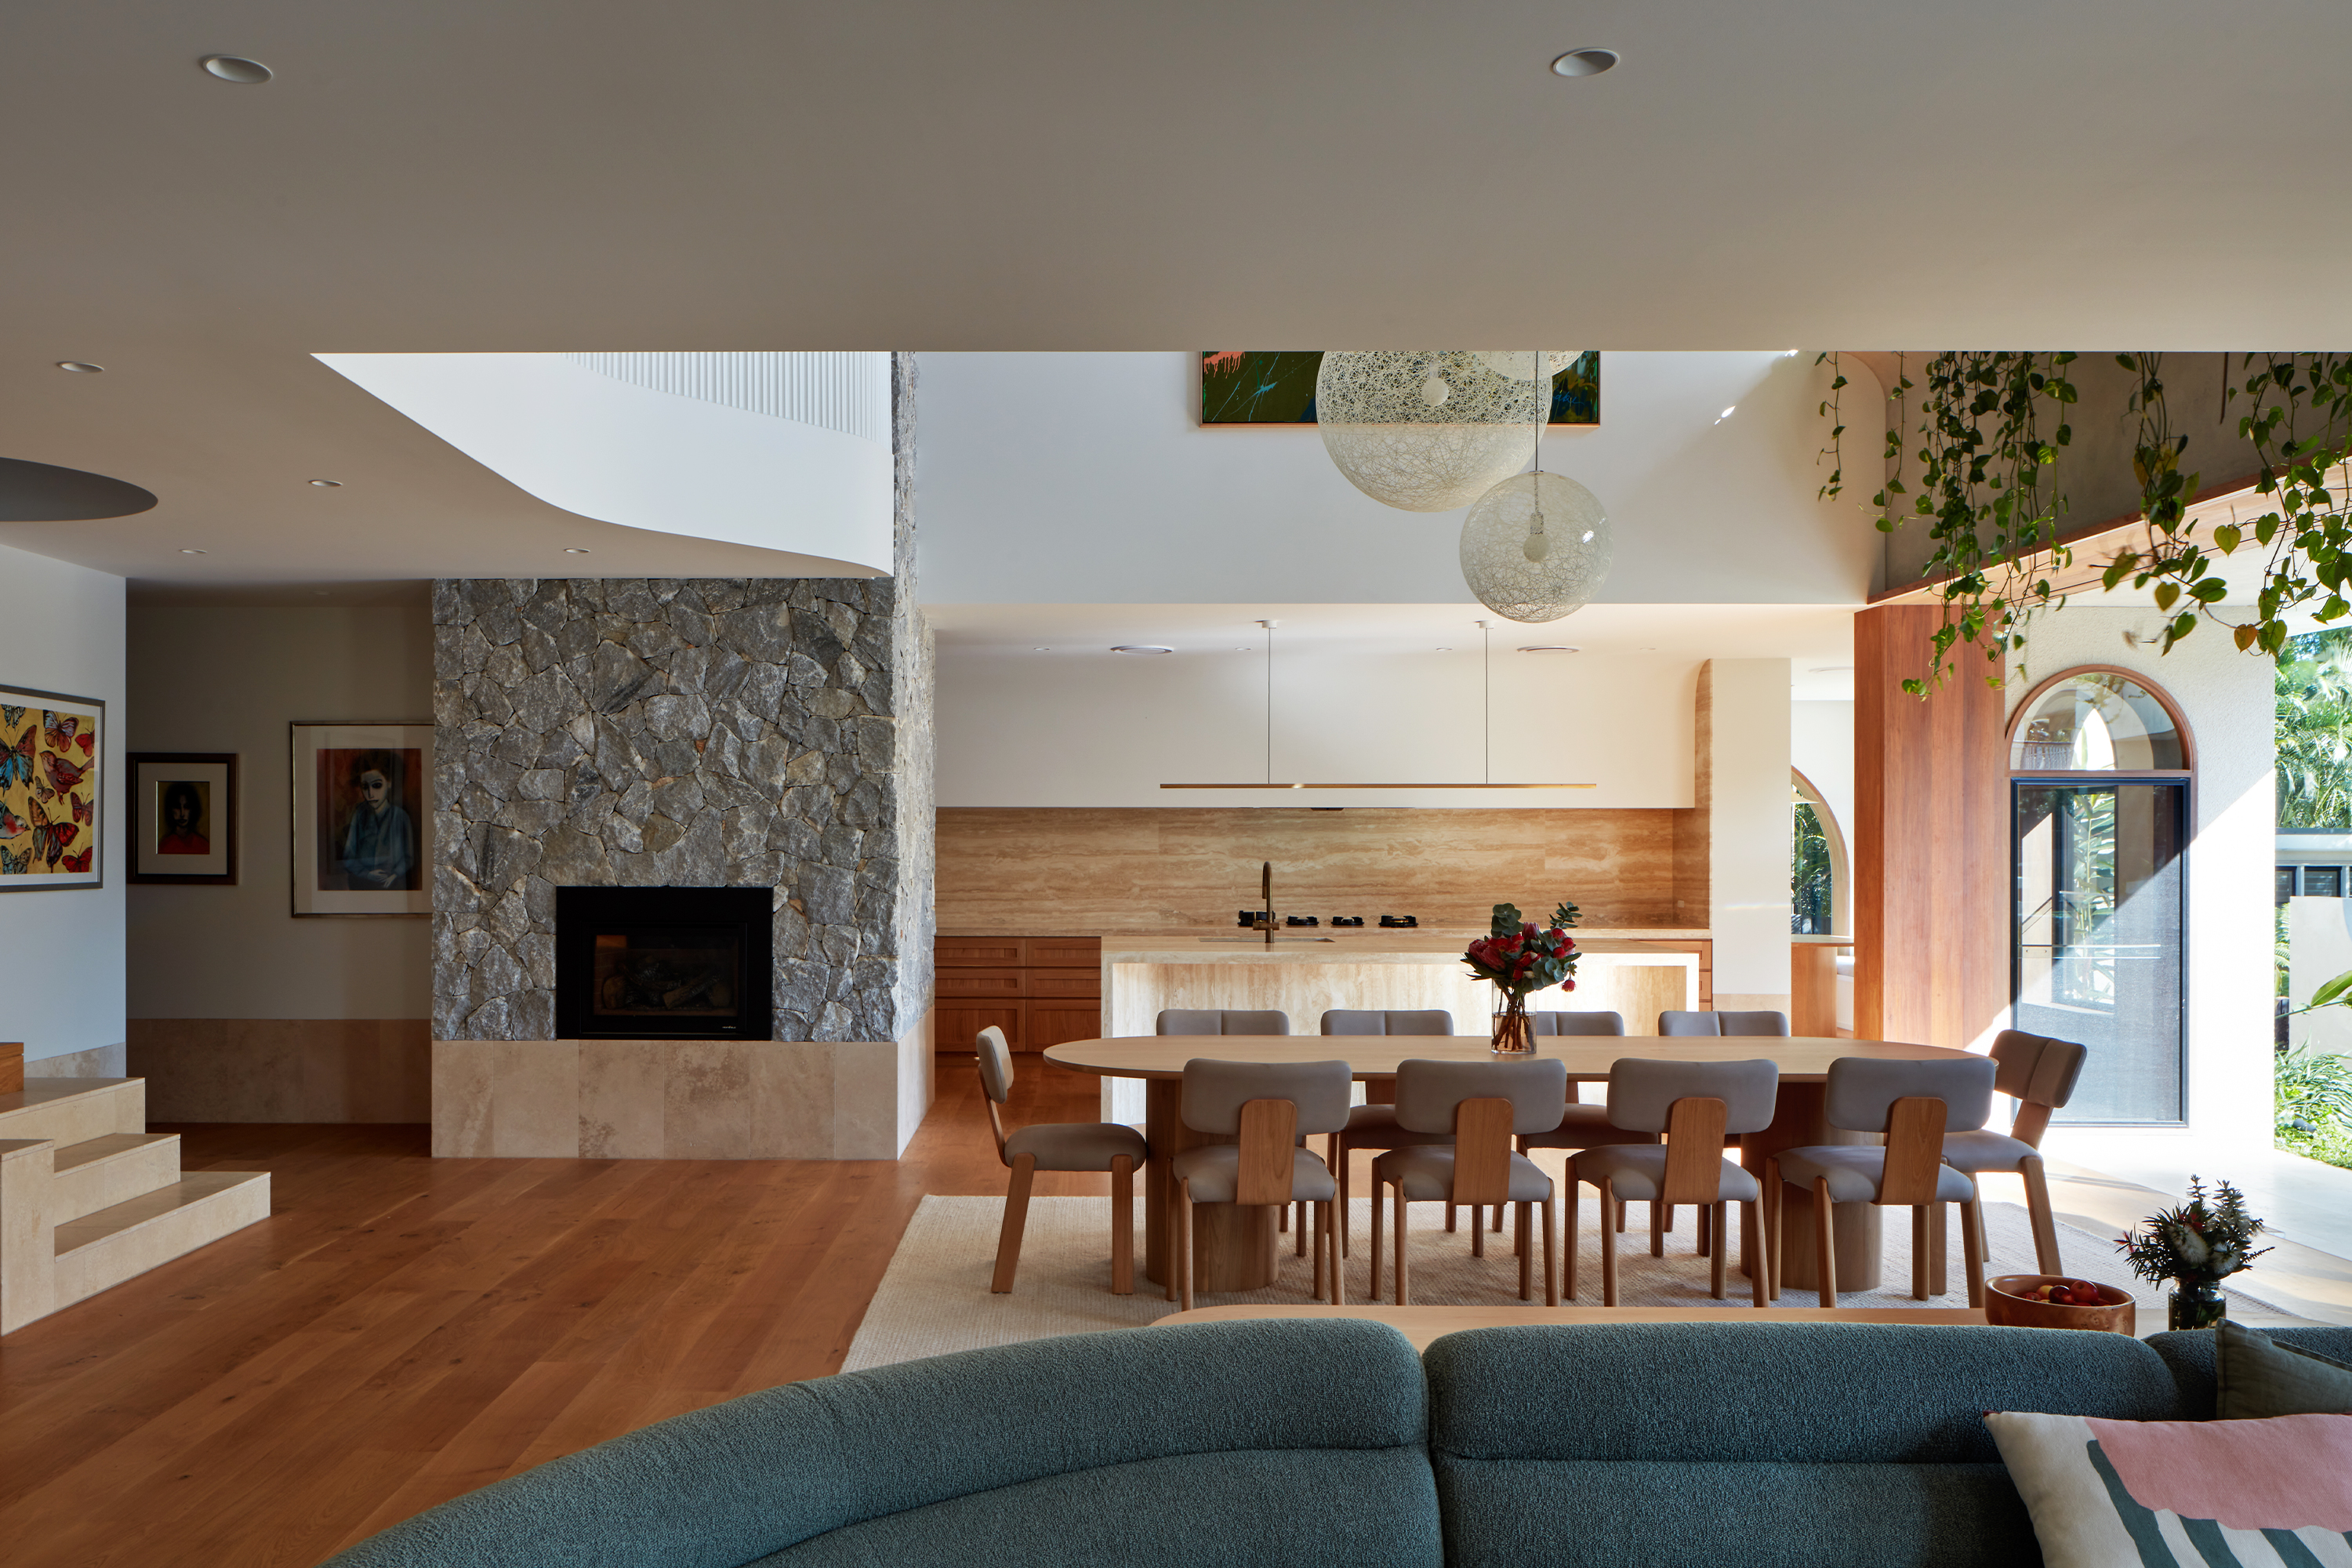 Glenrae Residence by Shaun Lockyer Architects Brisbane